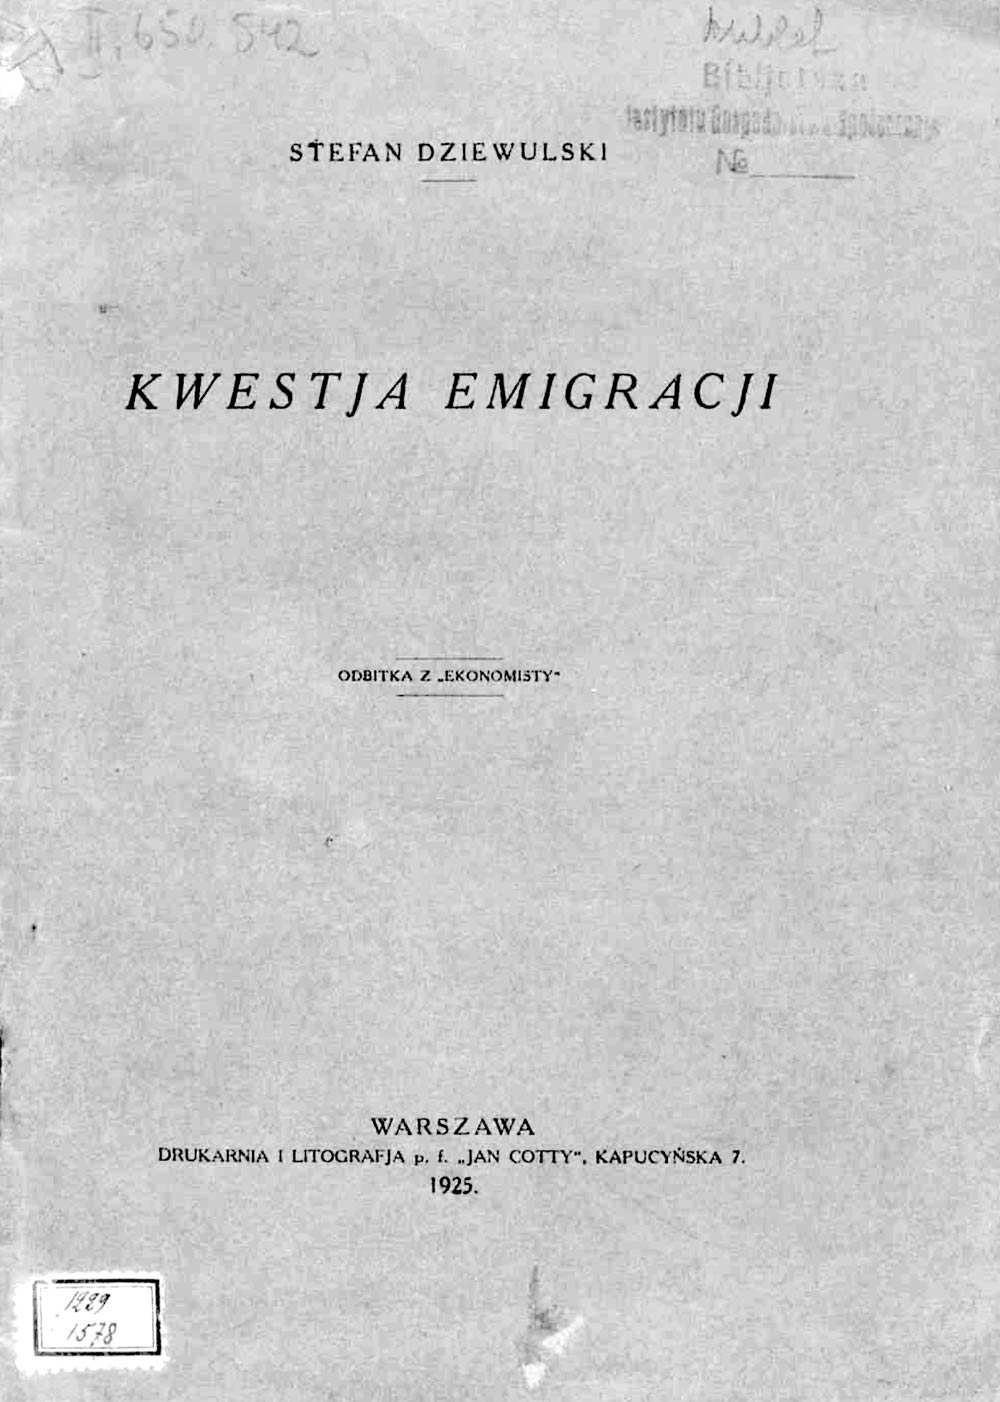 Kwestja Emigracji / Stefan Dziewulski. - Warszawa. - 1925